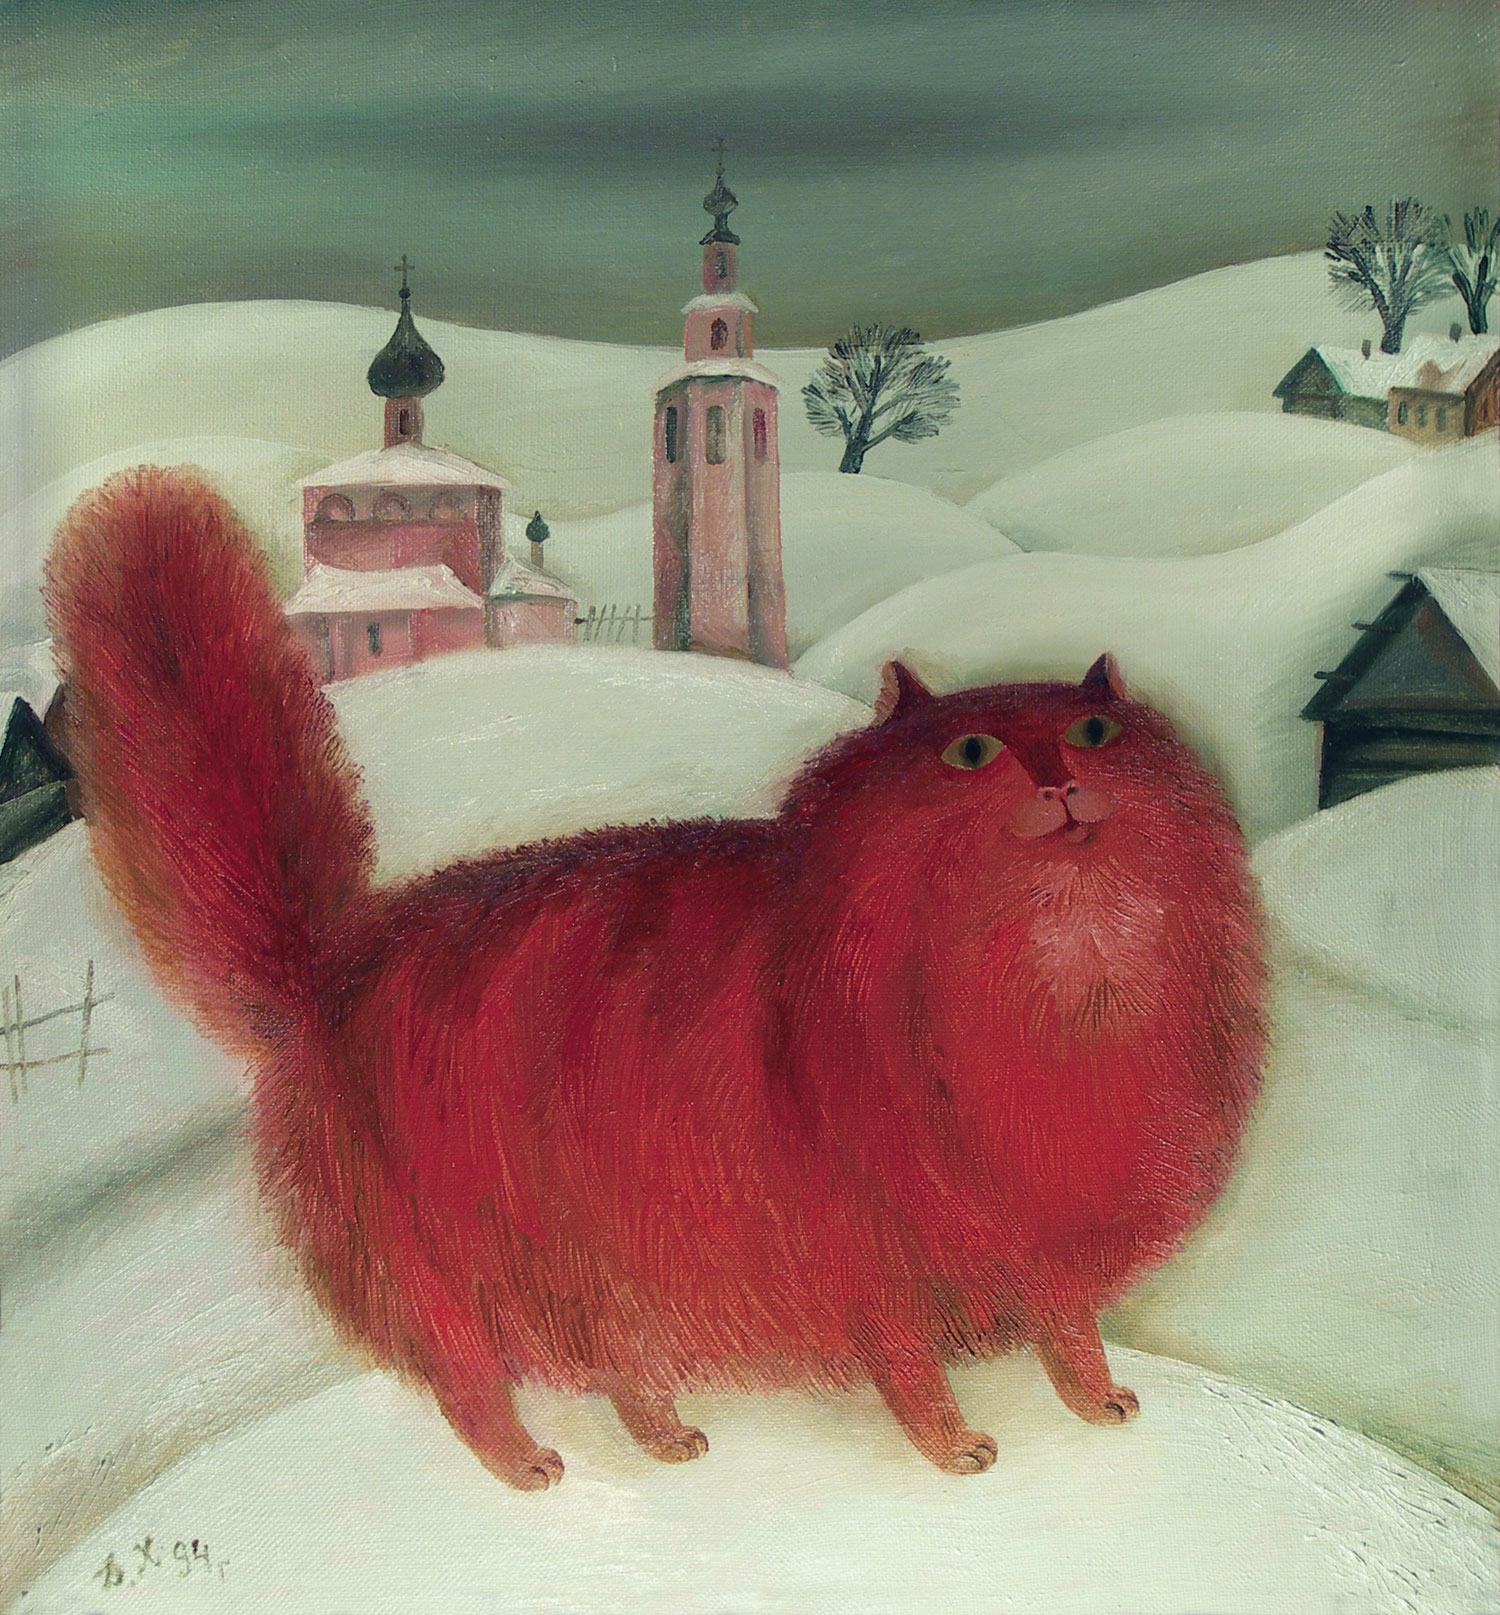 Red cat папа. Красный кот. Кошка красного цвета. Кошка с красной шерстью.